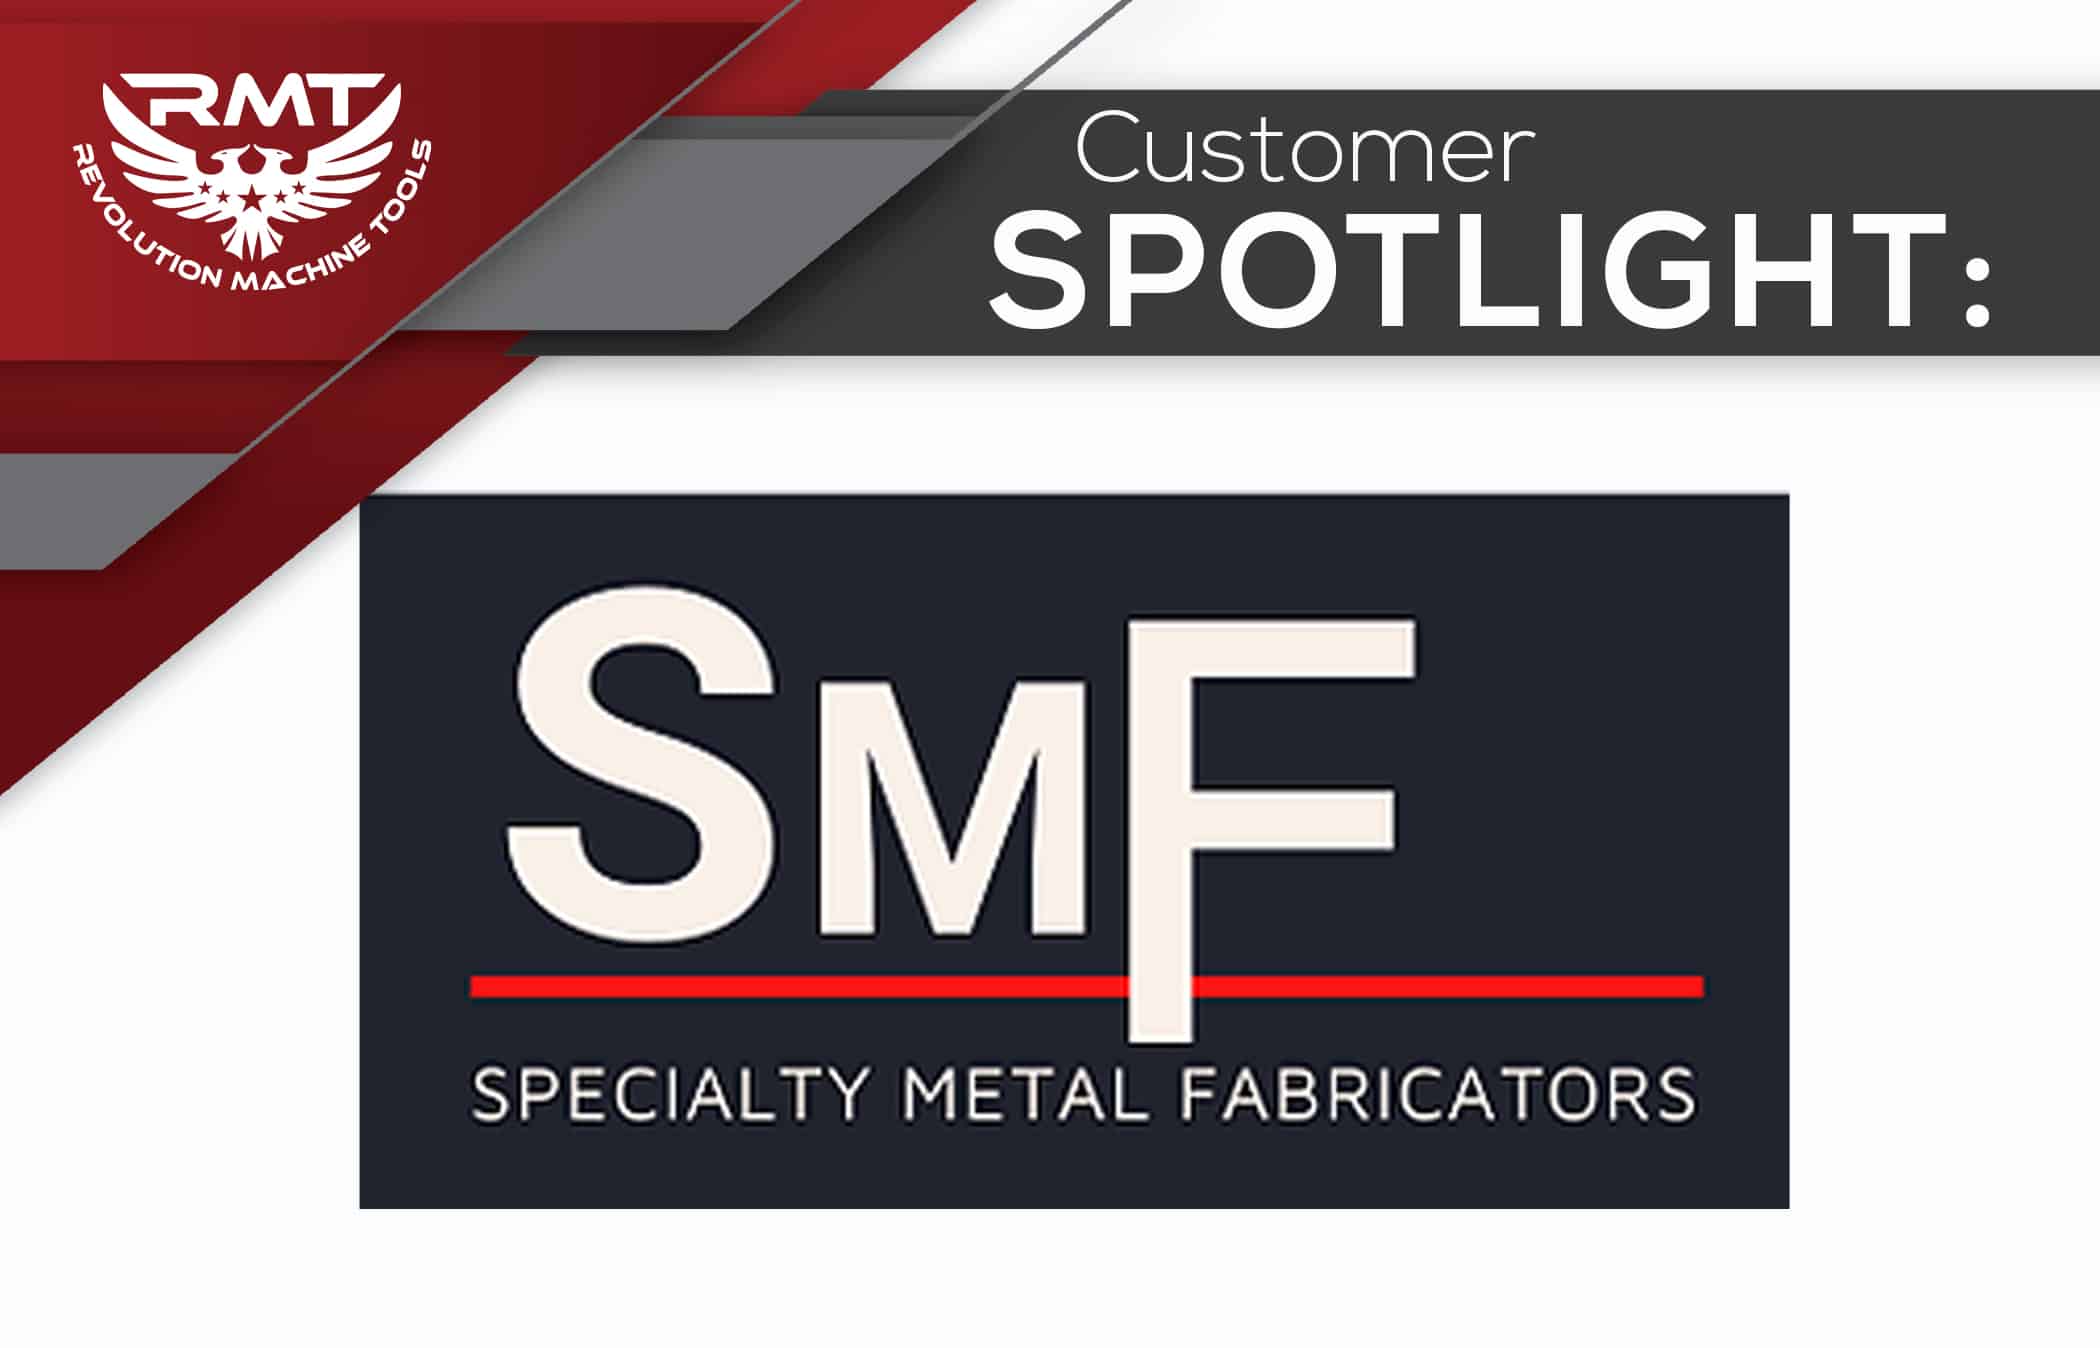 Customer Spotlight SMF